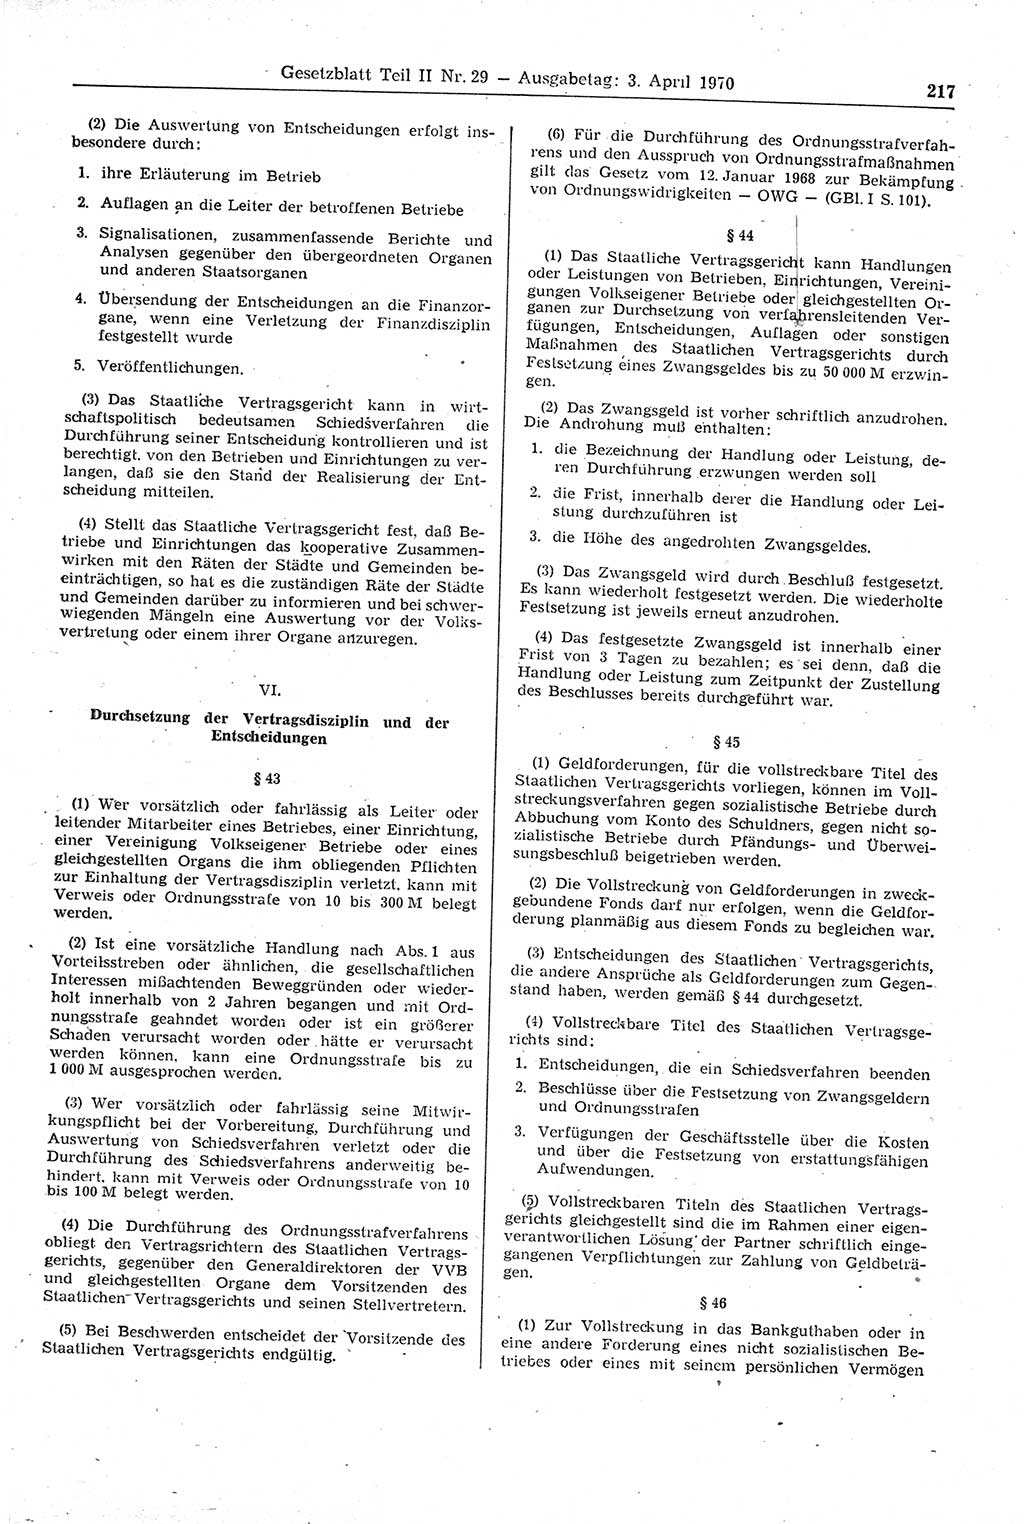 Gesetzblatt (GBl.) der Deutschen Demokratischen Republik (DDR) Teil ⅠⅠ 1970, Seite 217 (GBl. DDR ⅠⅠ 1970, S. 217)